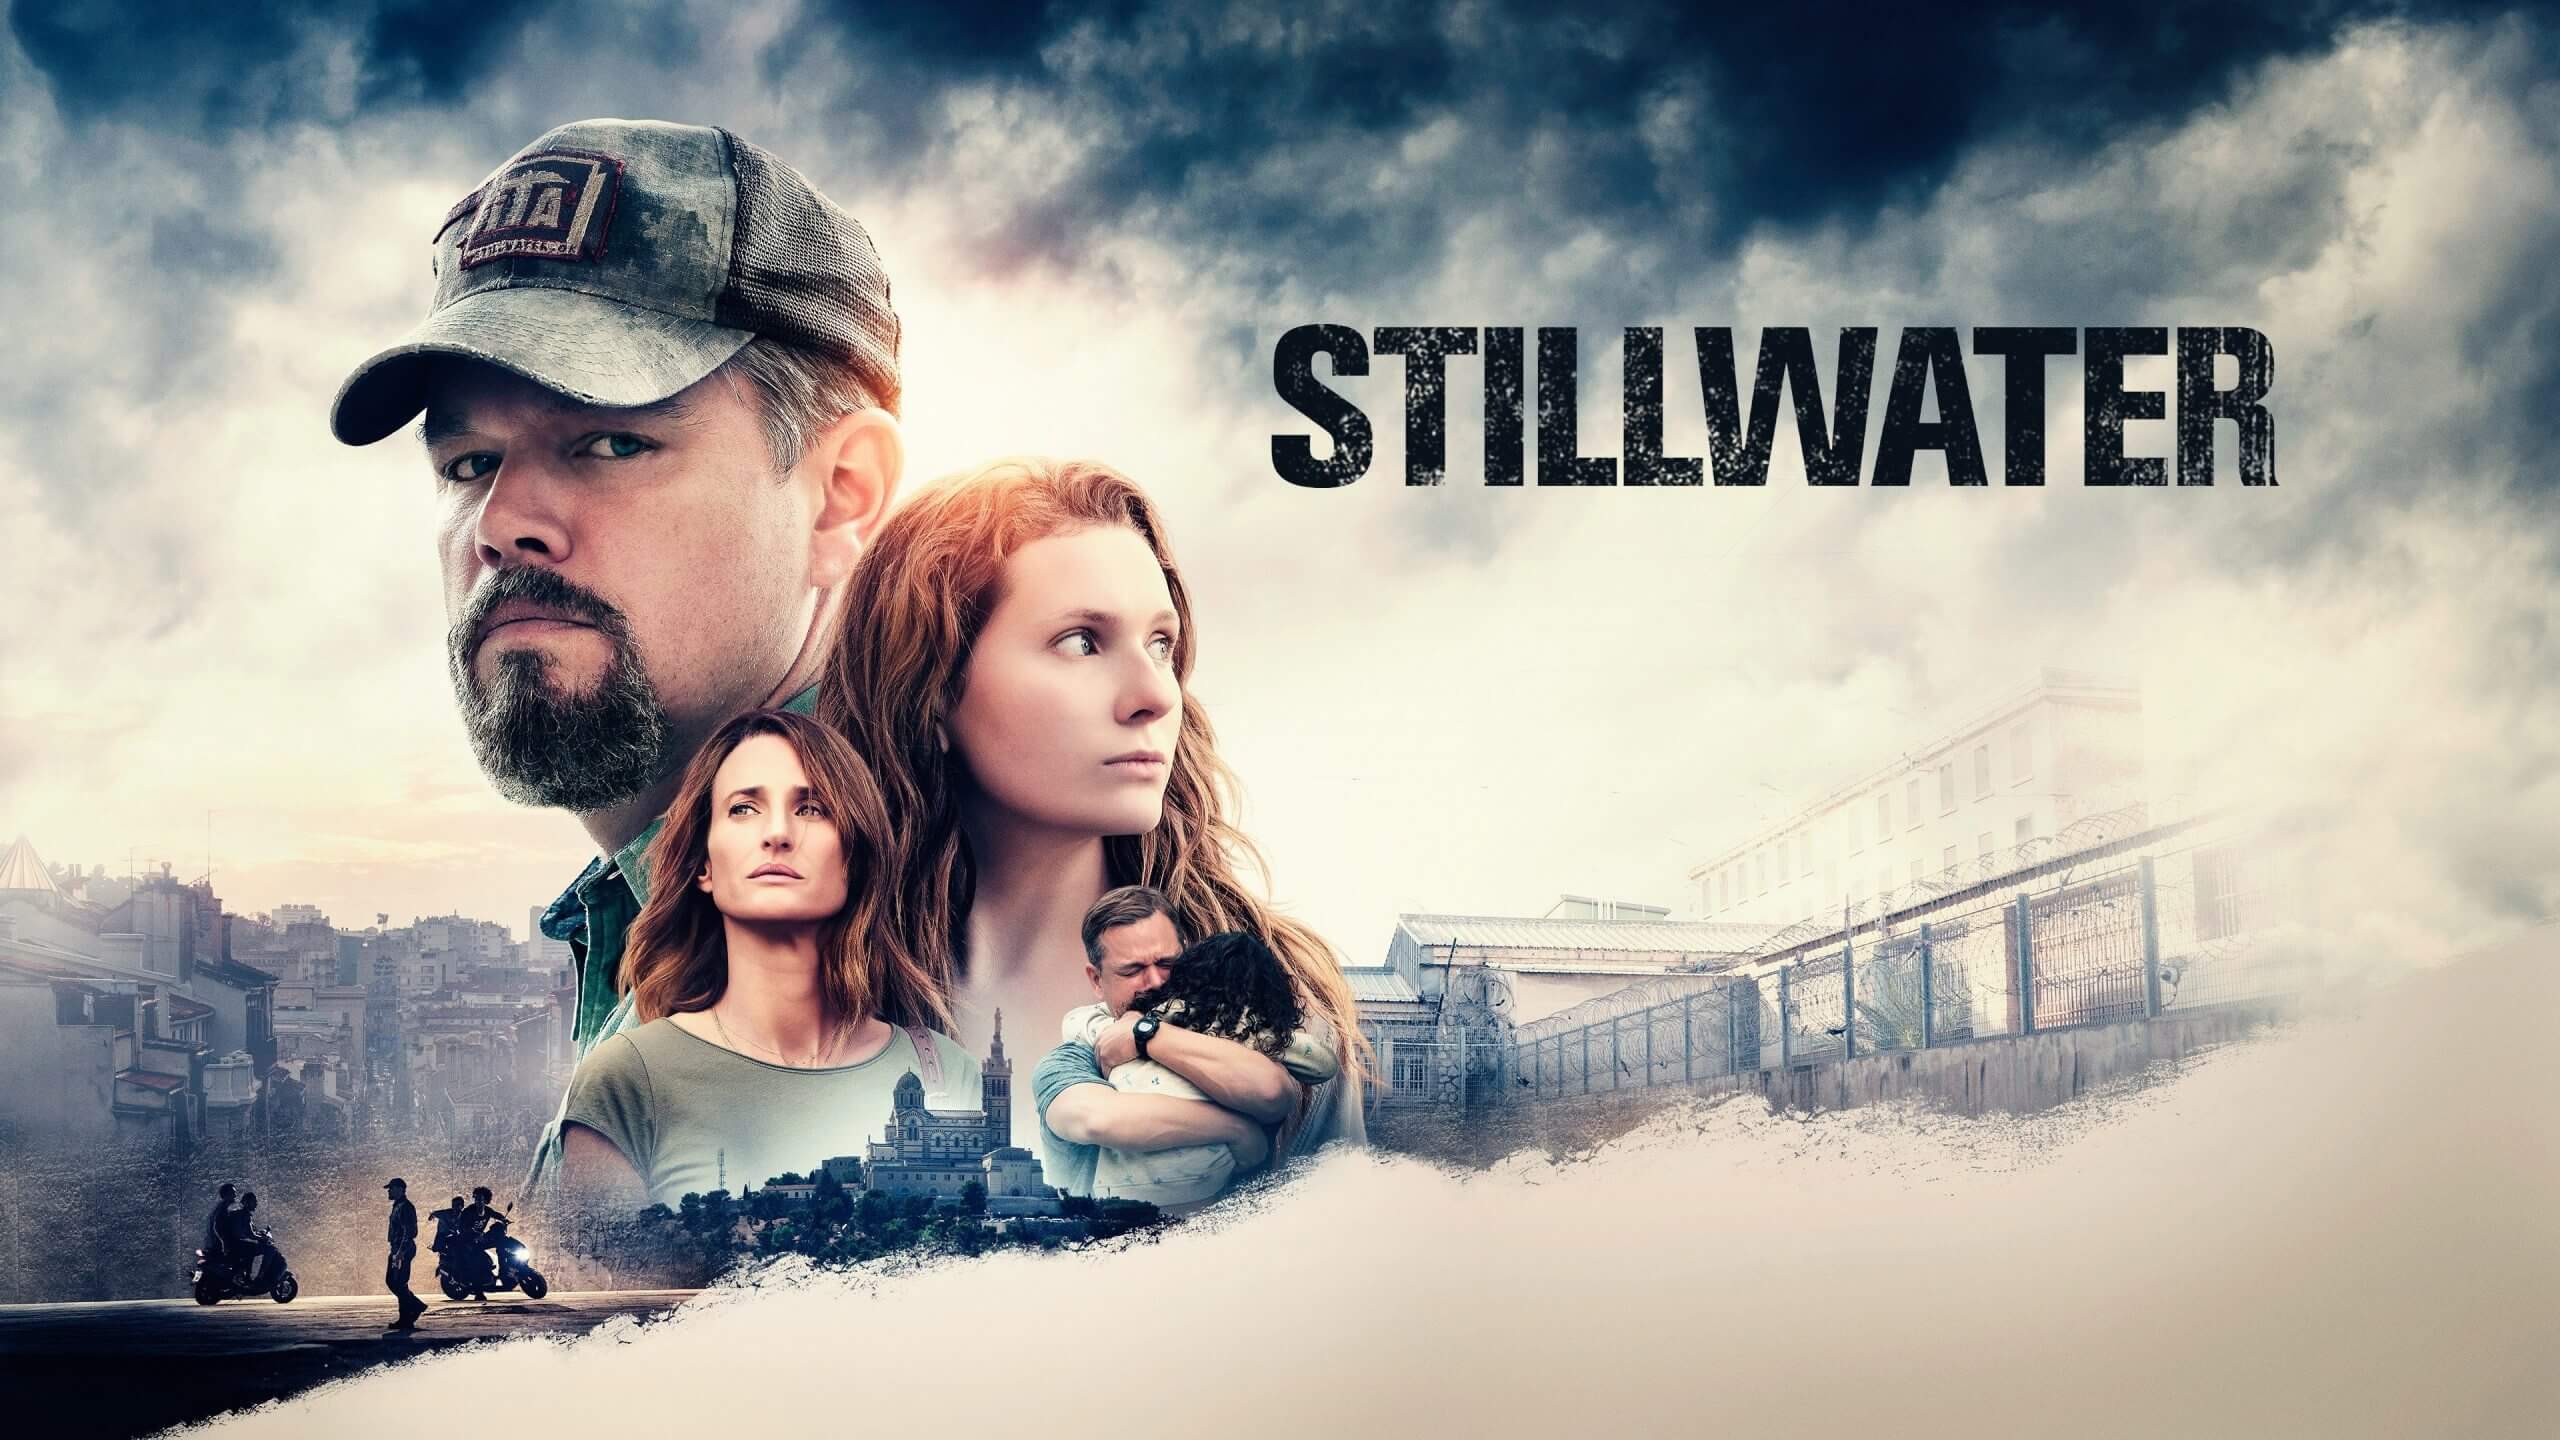 stillwater-2021-movie